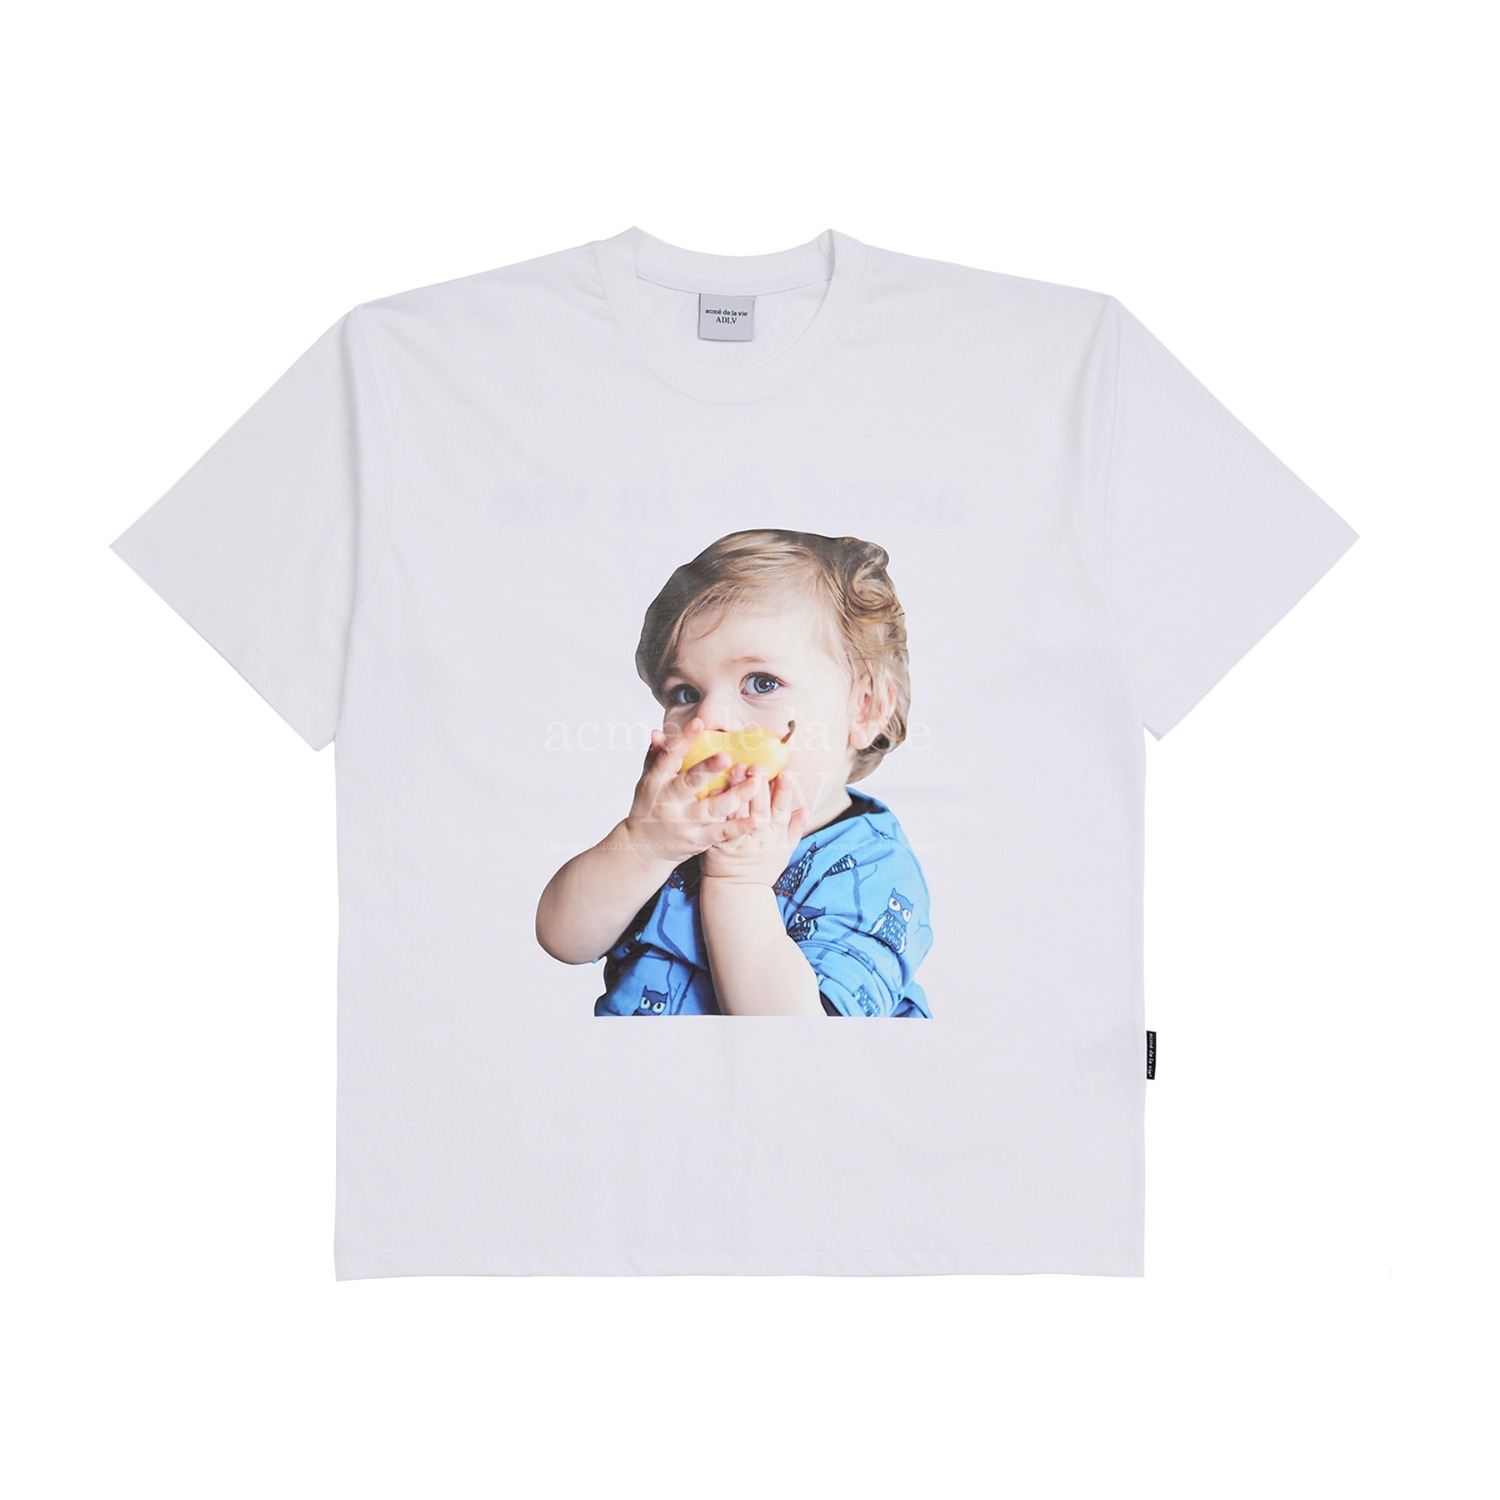 [해외전용 상품] BABY FACE PEAR-EATING BABY SHORT SLEEVE T-SHIRT WHITE